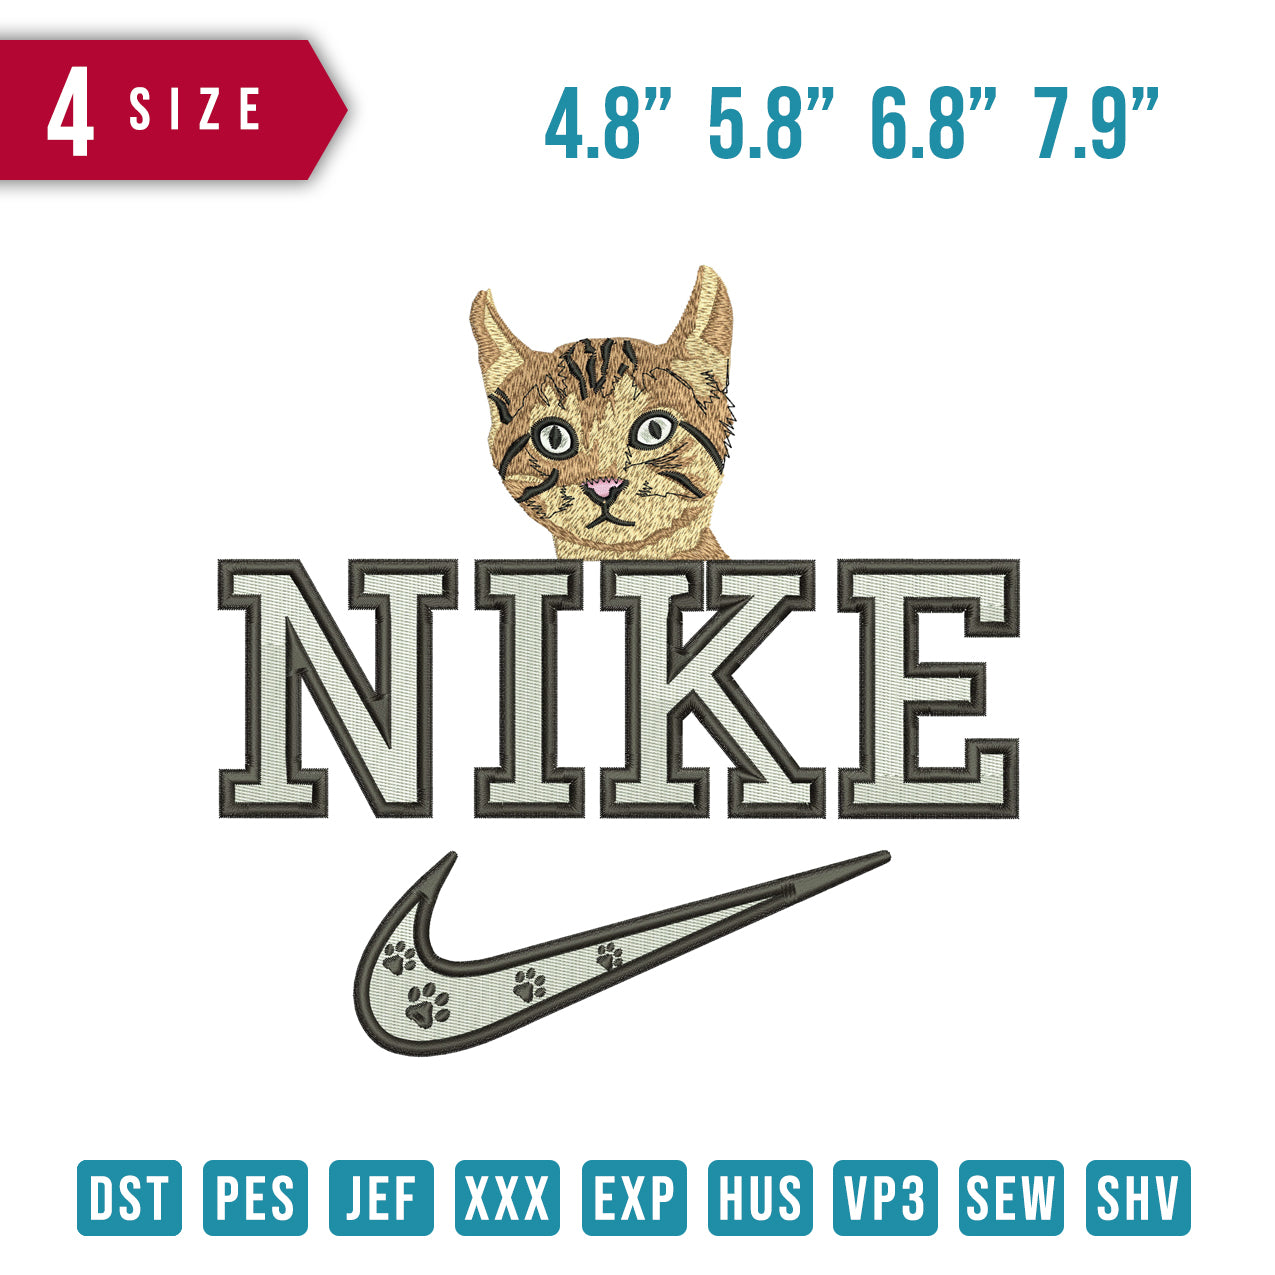 Nike Cat top